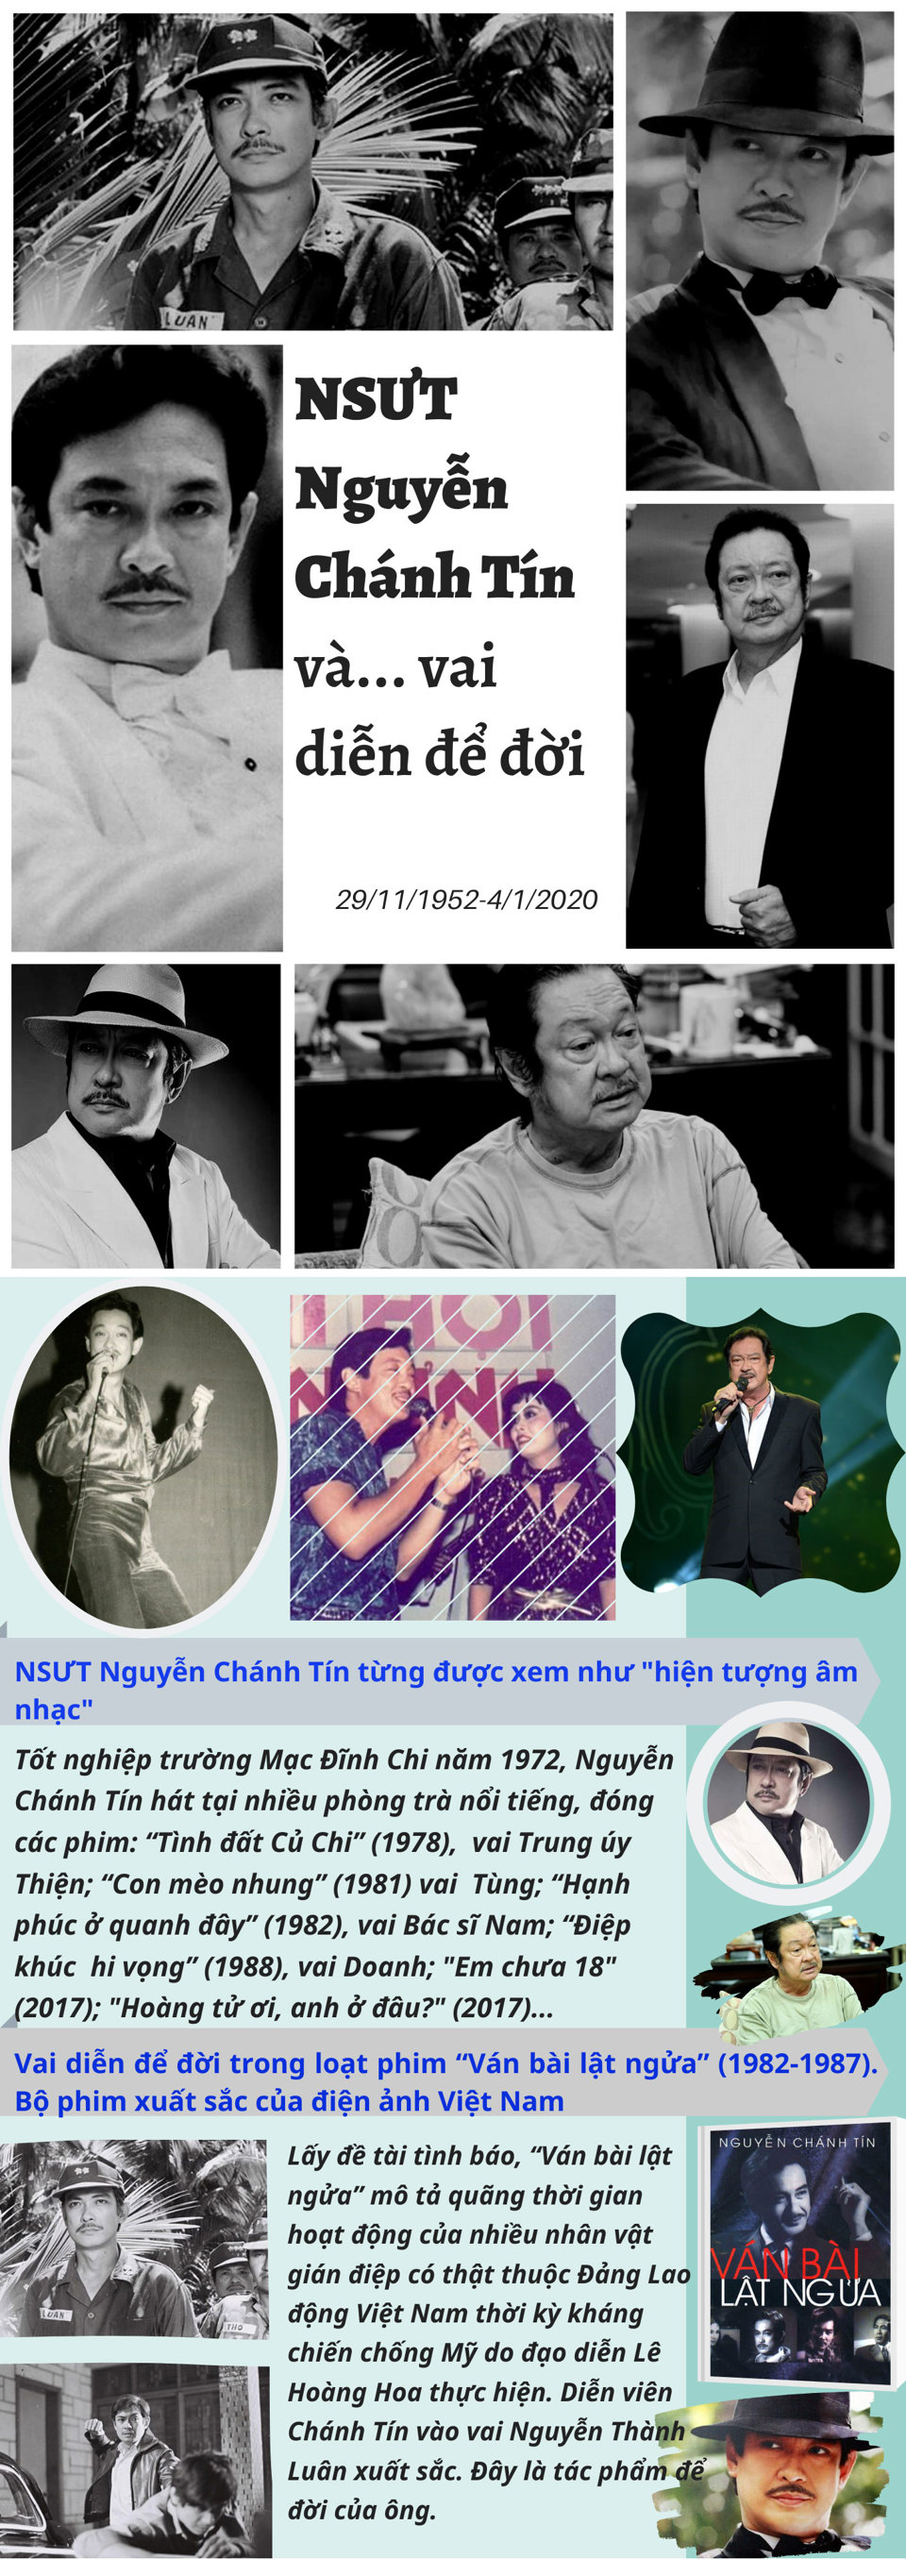 [Infographic] Điểm lại vai diễn để đời của NSƯT Nguyễn Chánh Tín - Ảnh 1